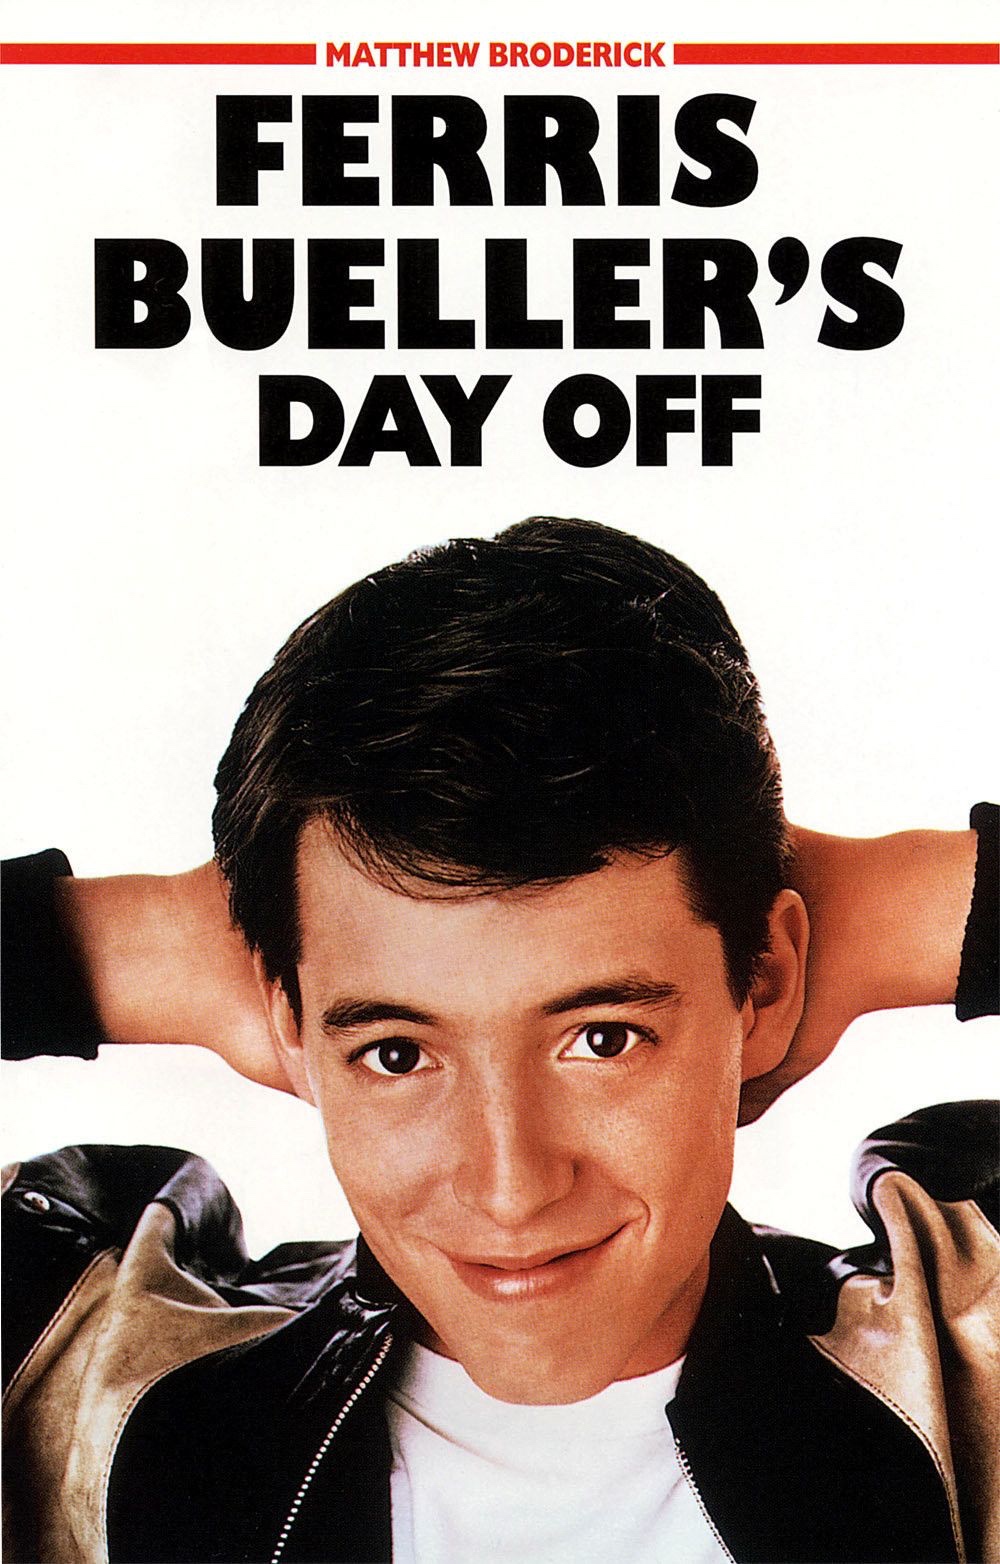 ferris bueller - Matthew Broderick Ferris Bueller'S Day Off